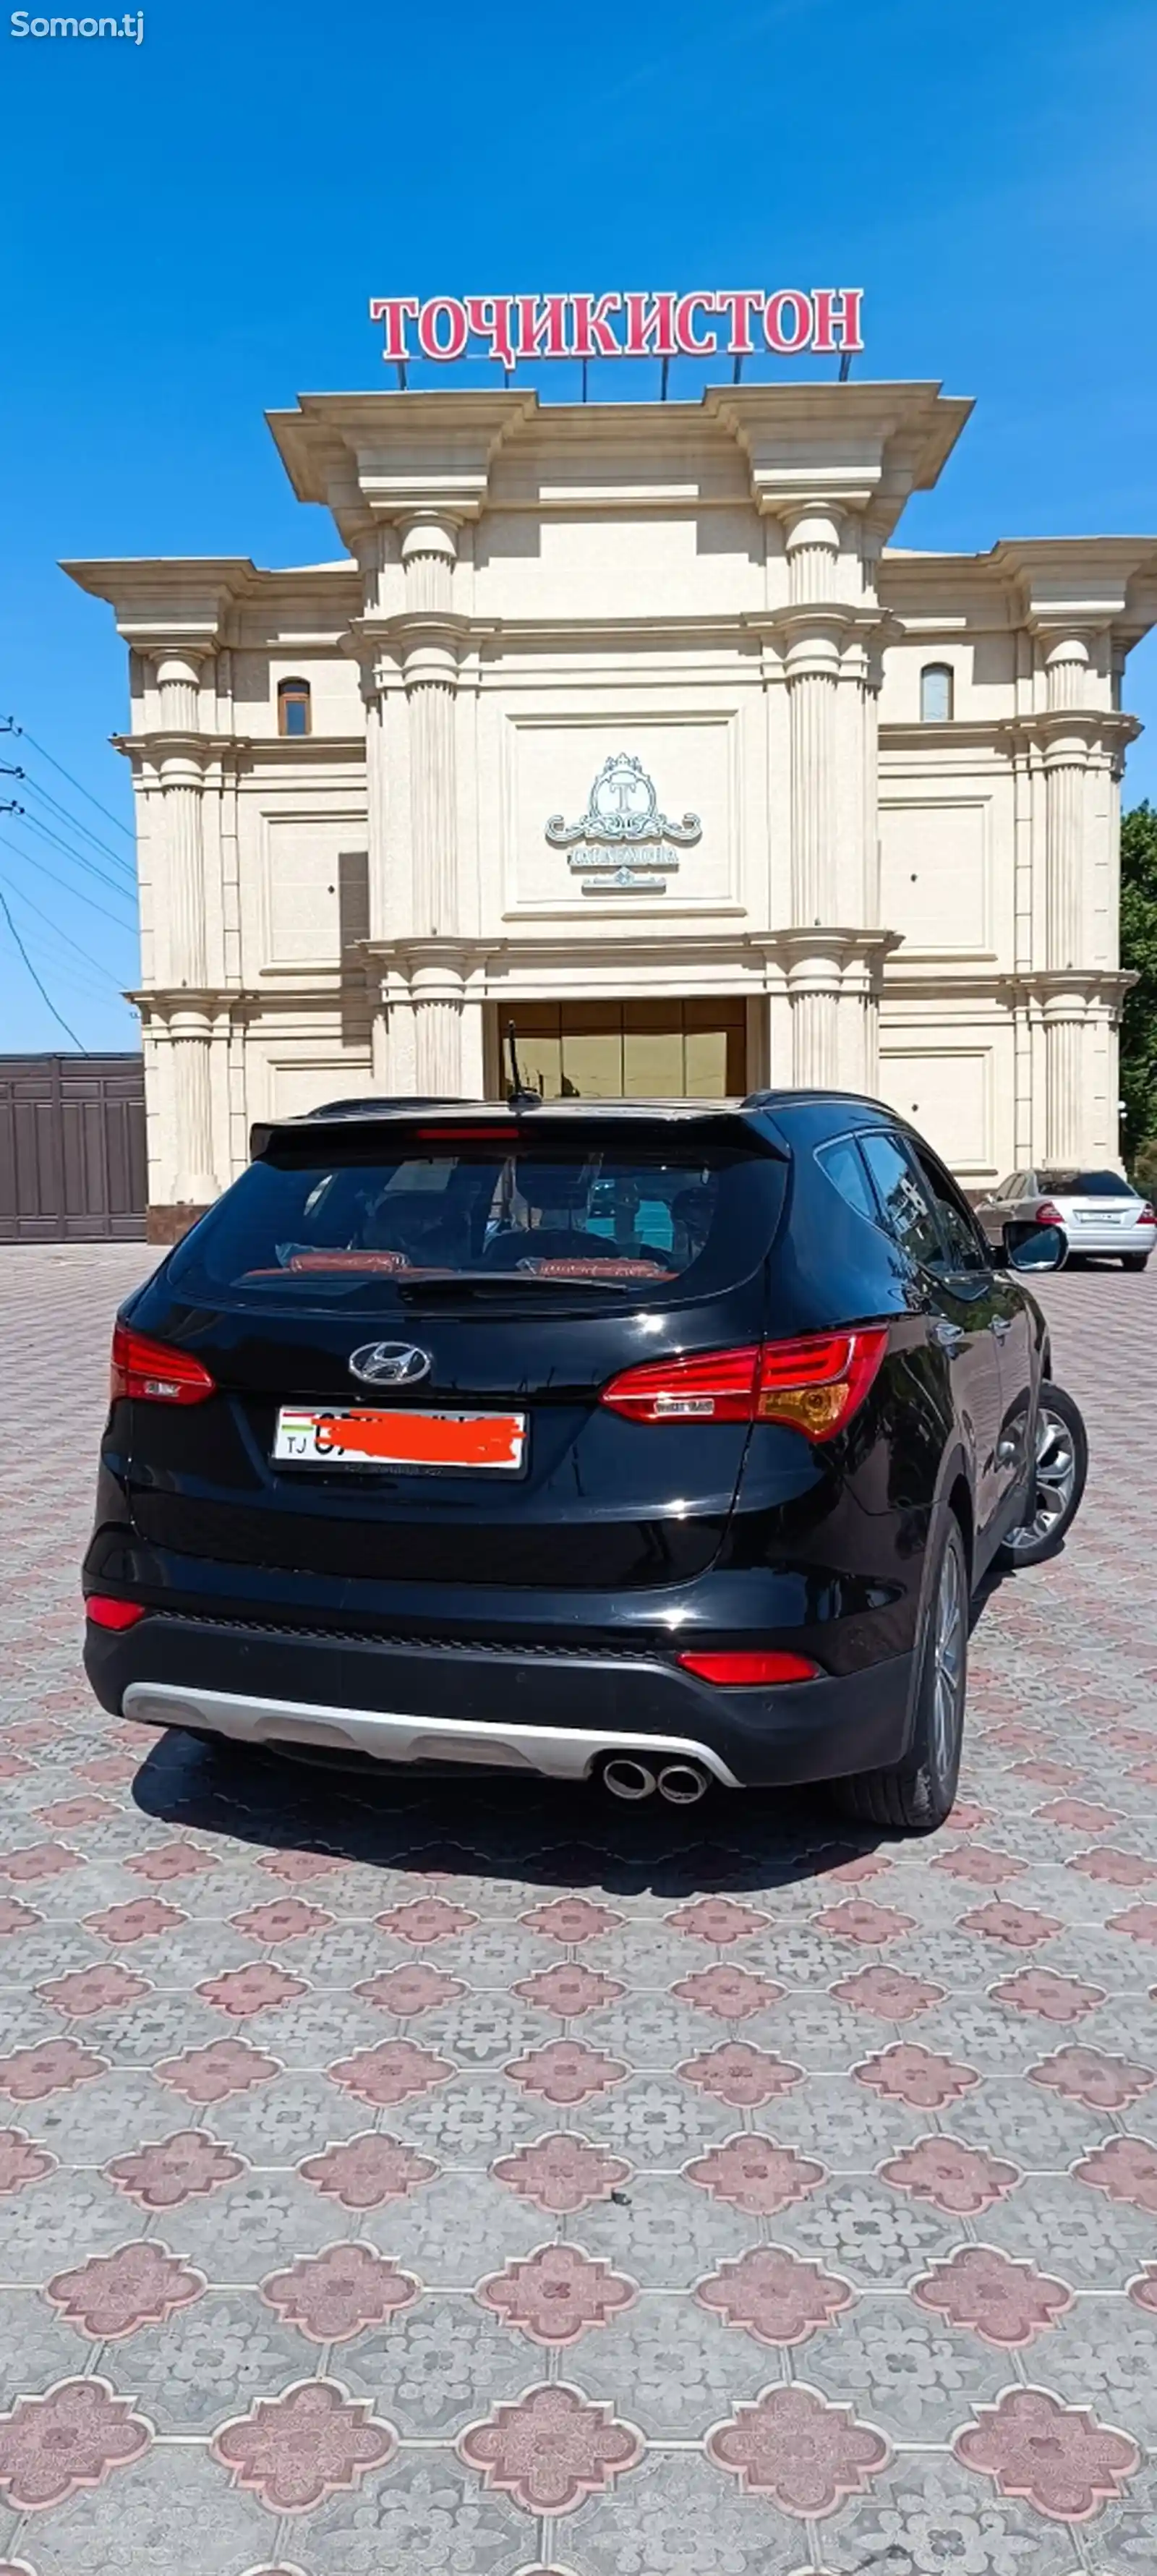 Hyundai Santa Fe, 2013-2